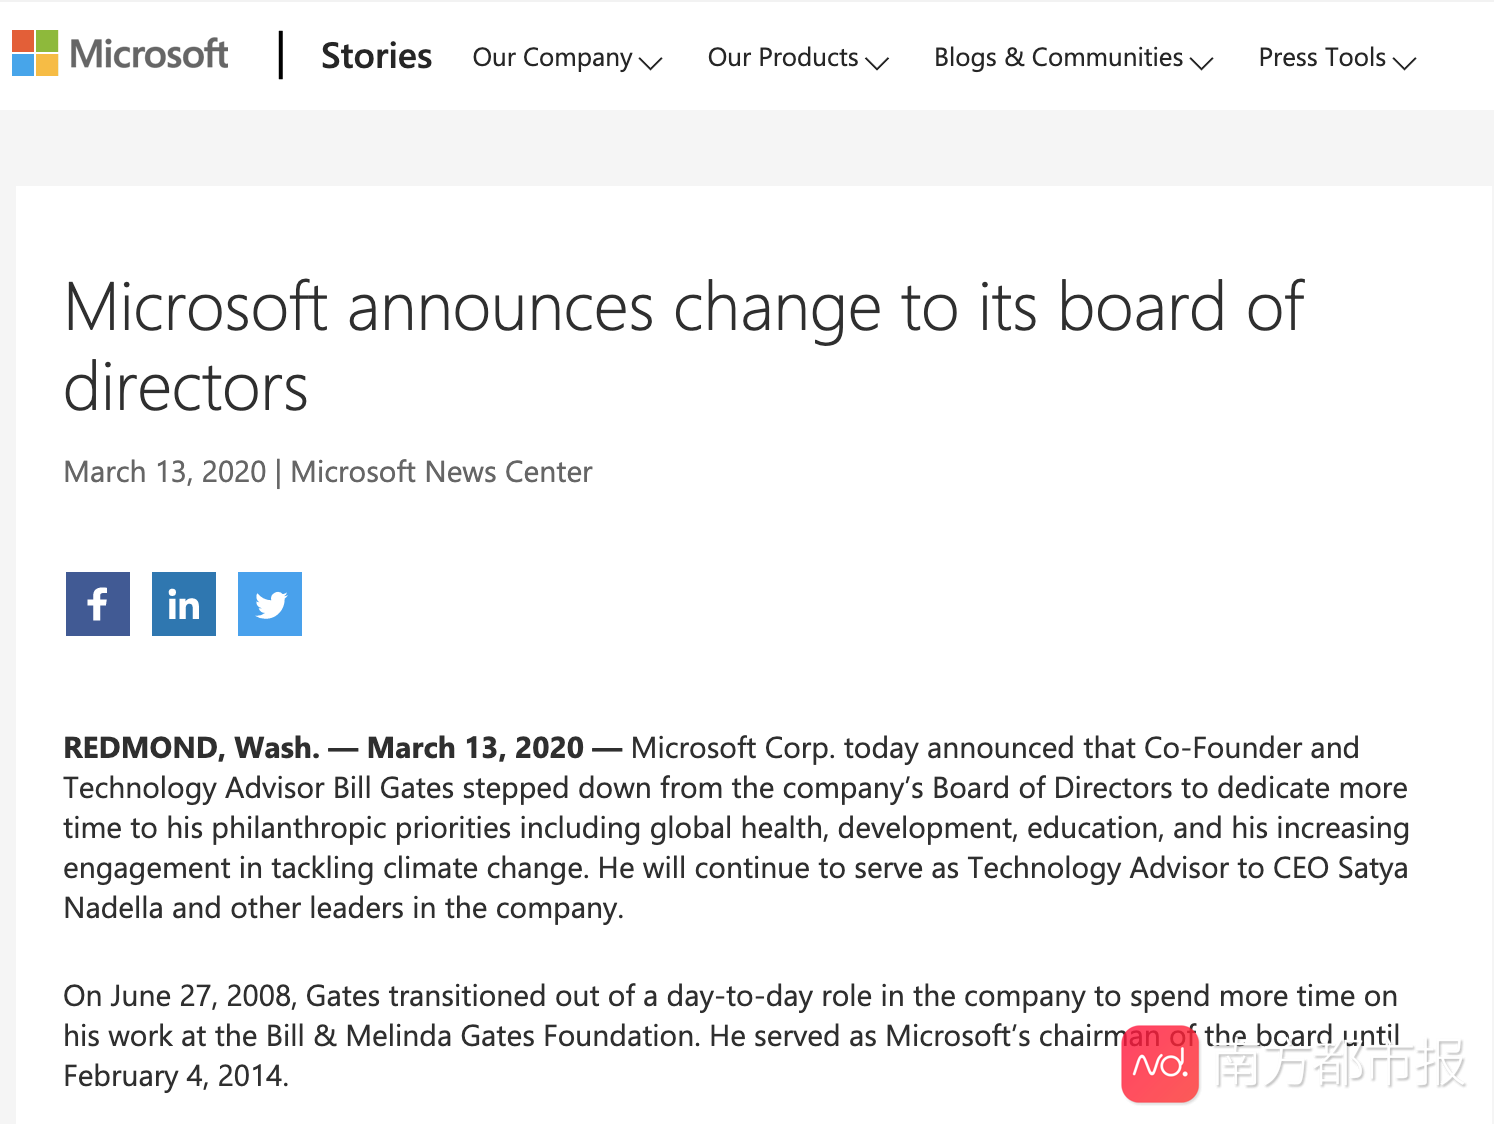 比尔盖茨退出微软董事会主攻慈善事业已捐1.5亿抗击新冠病毒